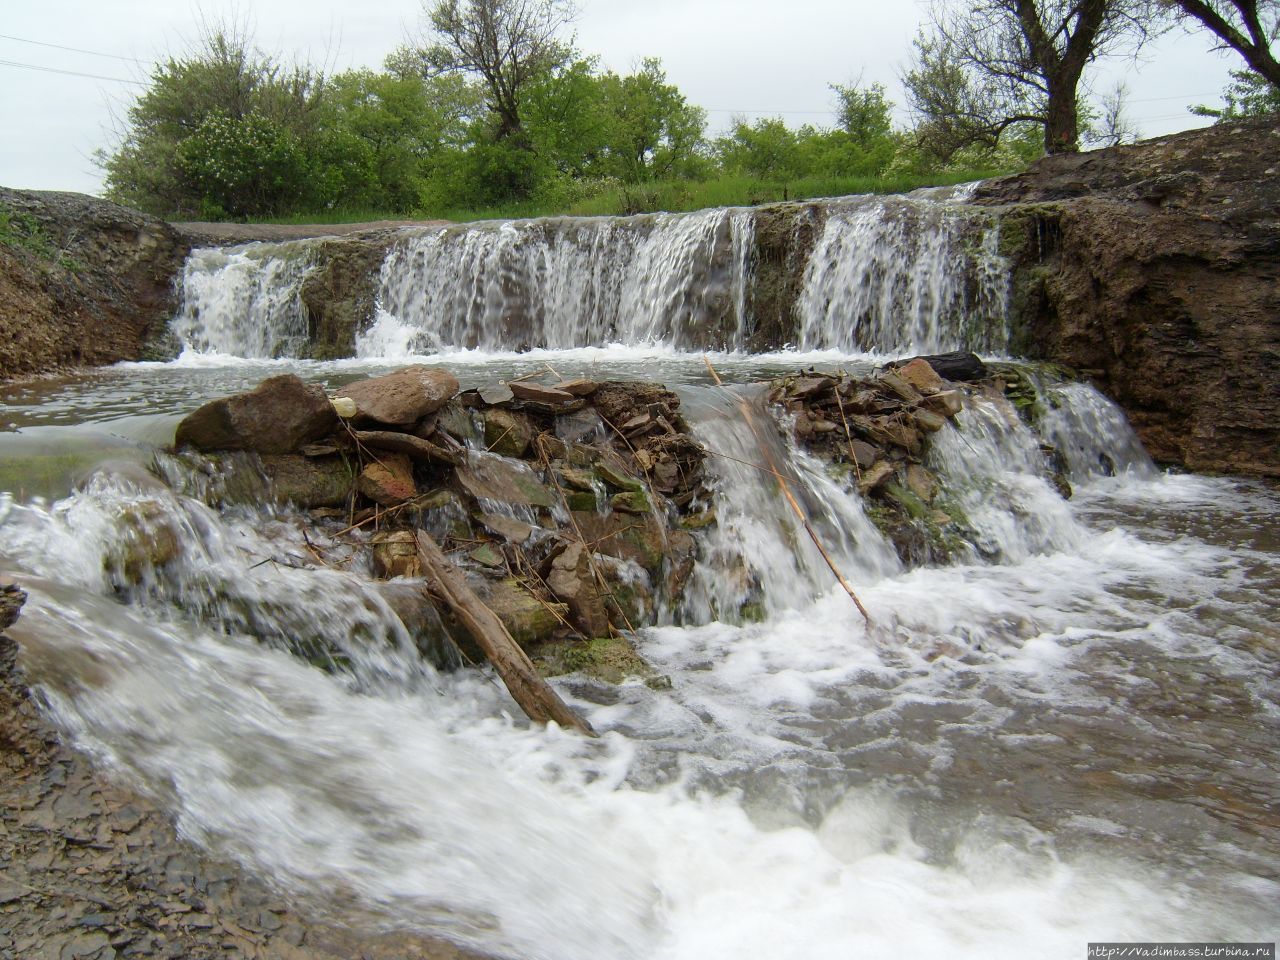 Водопад Примыканский,пгт.Дзержинский.,Луганская область Луганская область, Украина